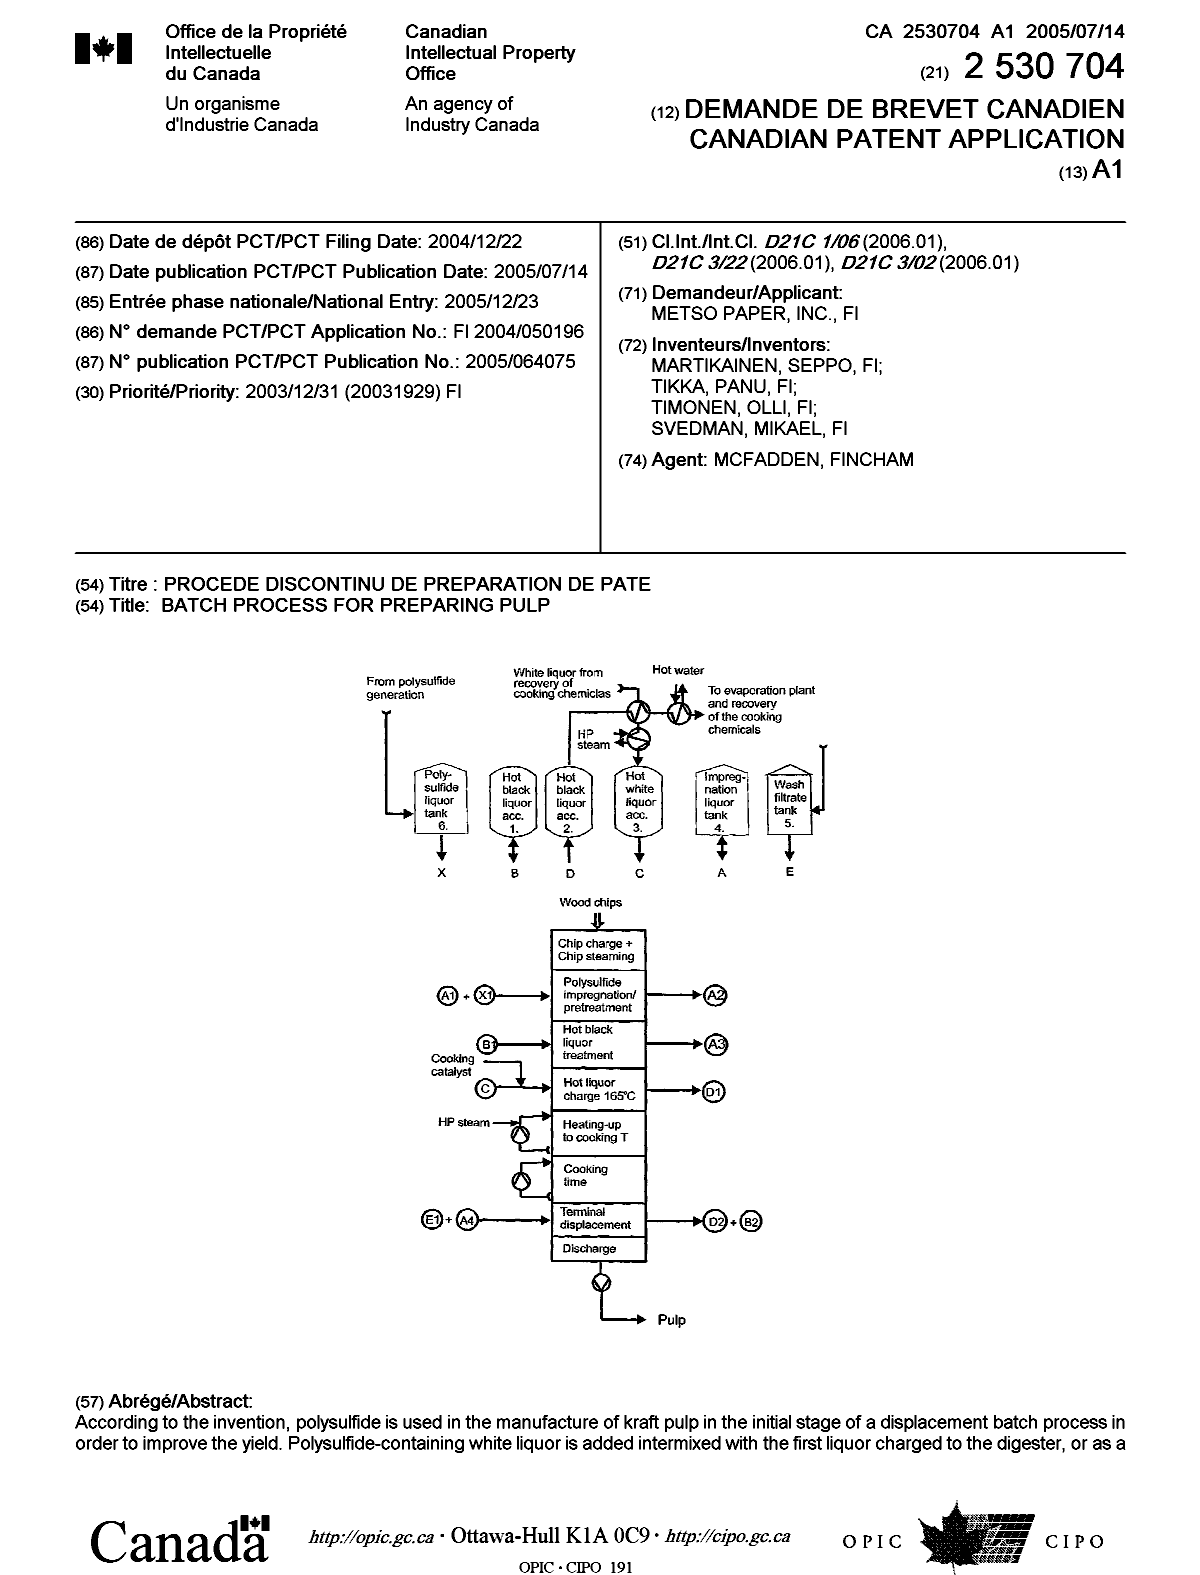 Document de brevet canadien 2530704. Page couverture 20051201. Image 1 de 2